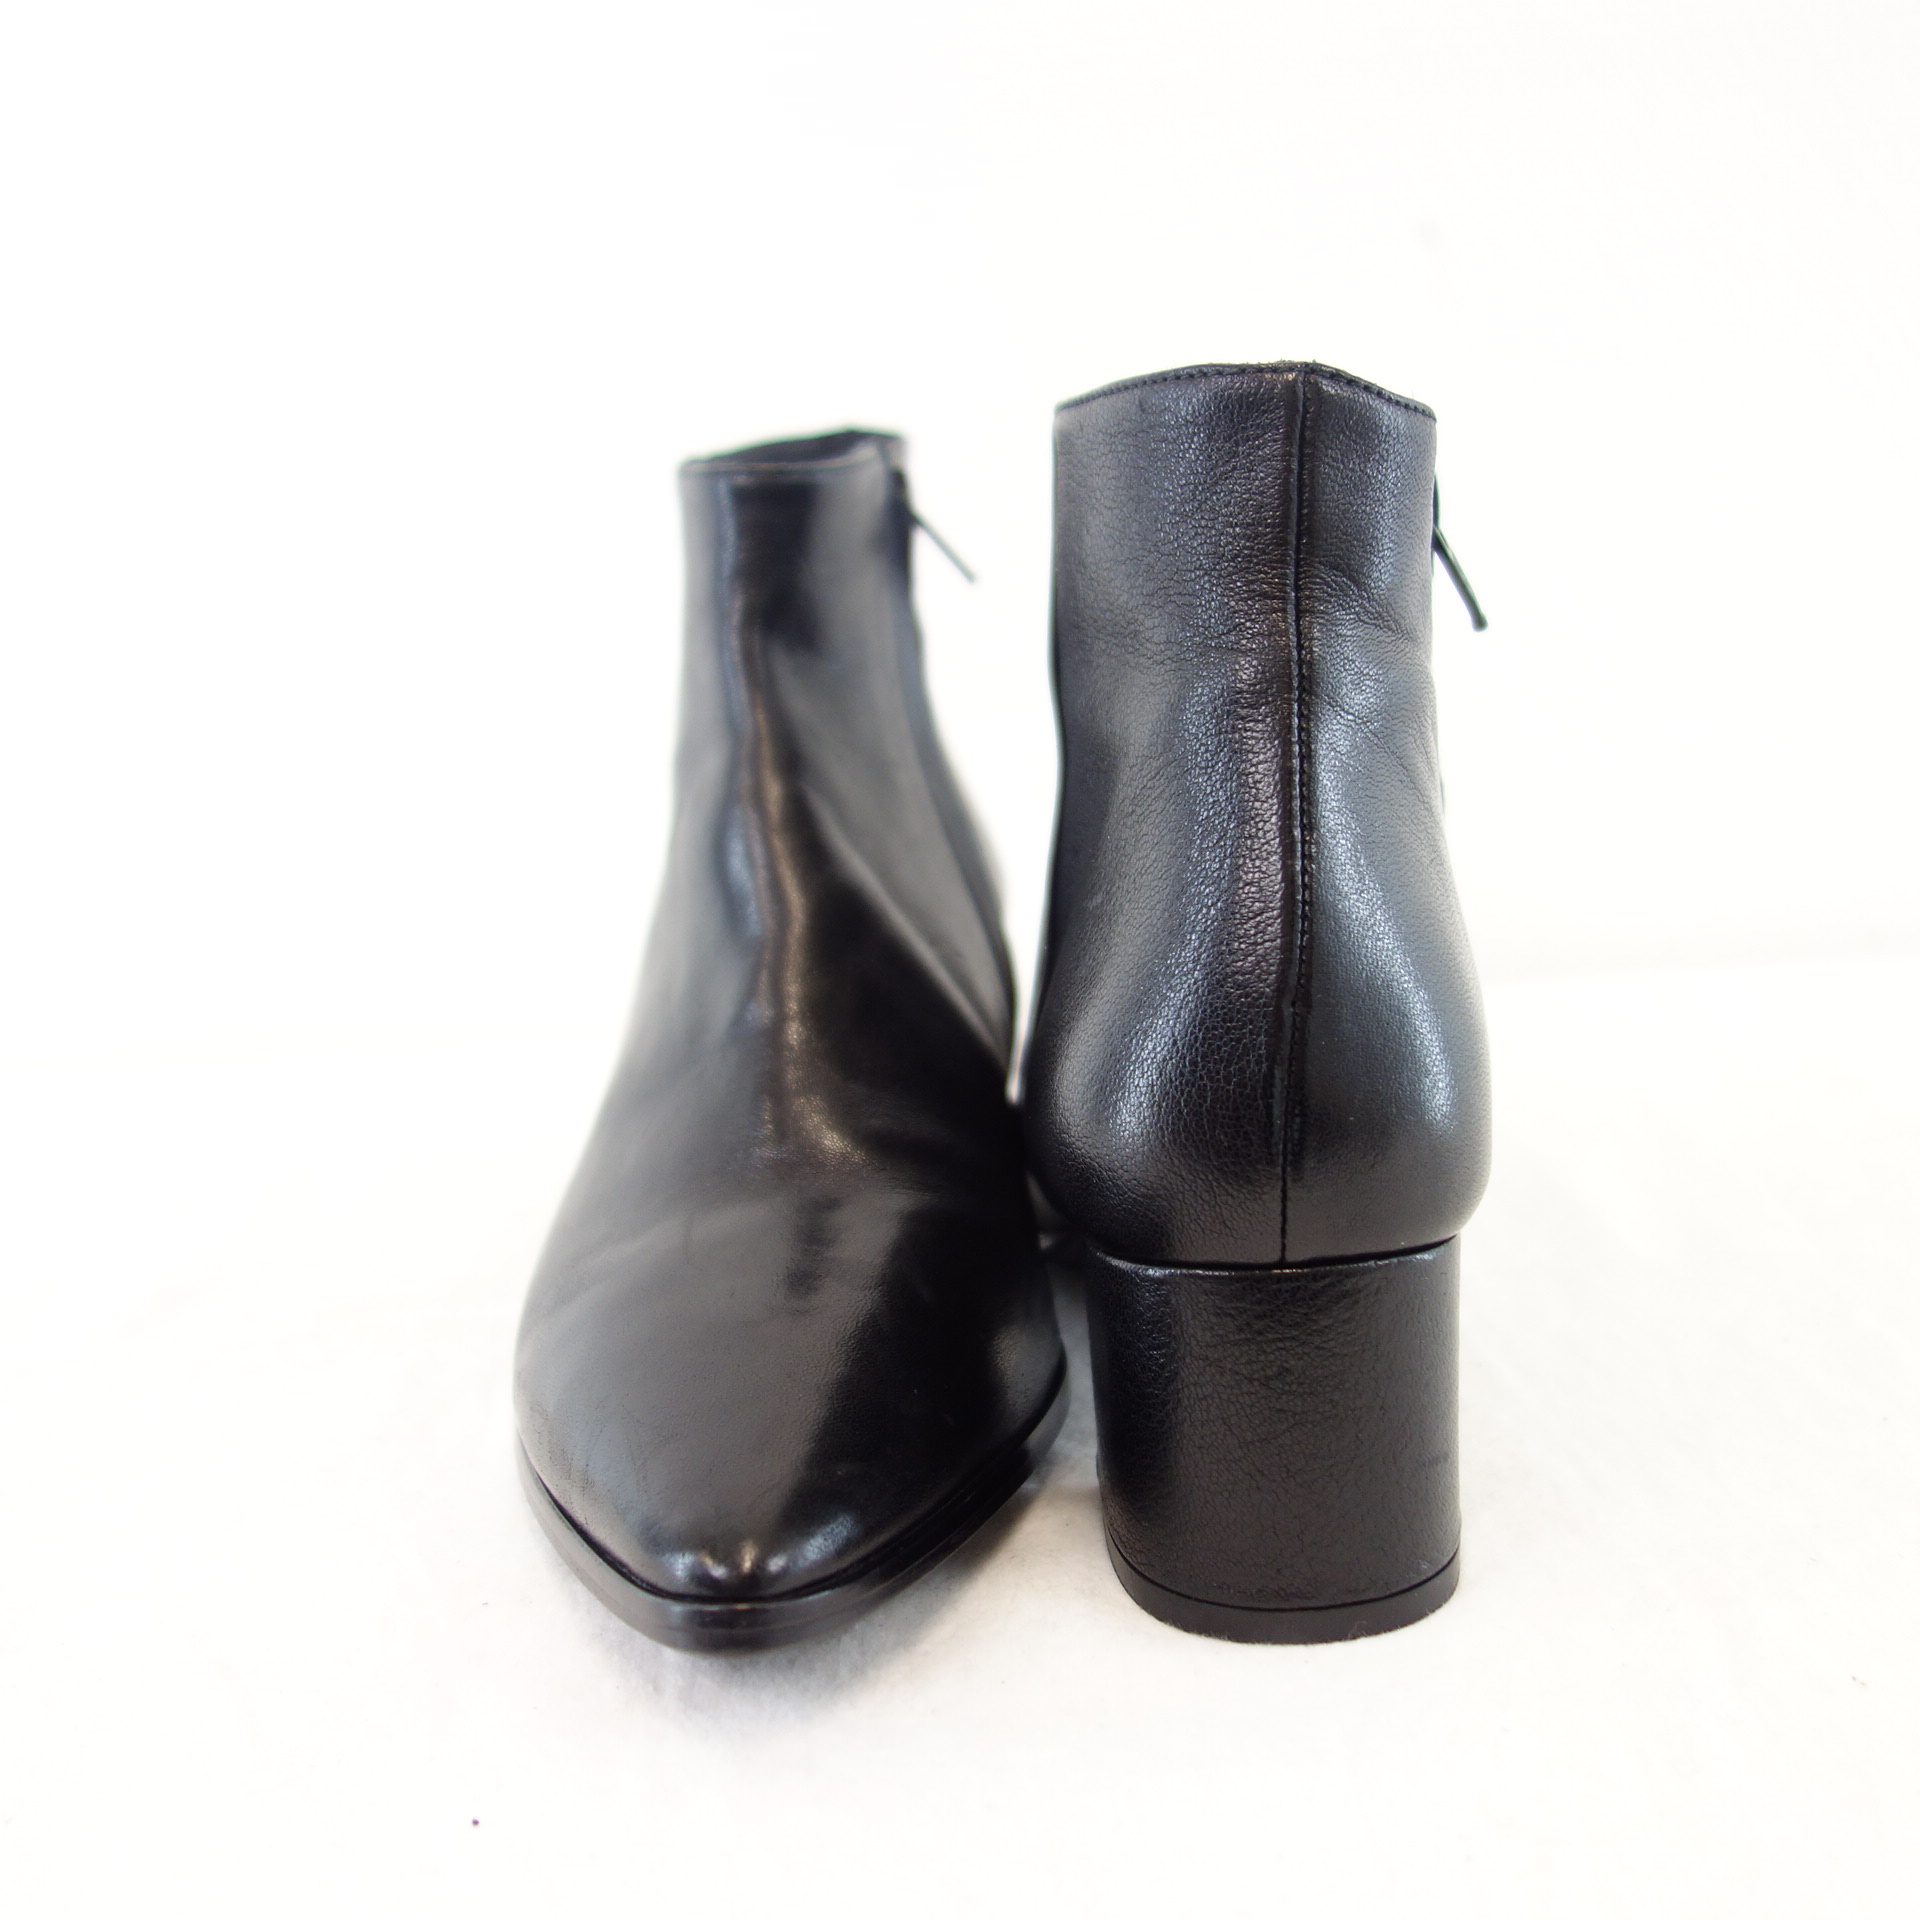 BILLI BI Damen Schuhe Stiefeletten Stiefel Boots Schwarz Leder Spitz Blockabsatz